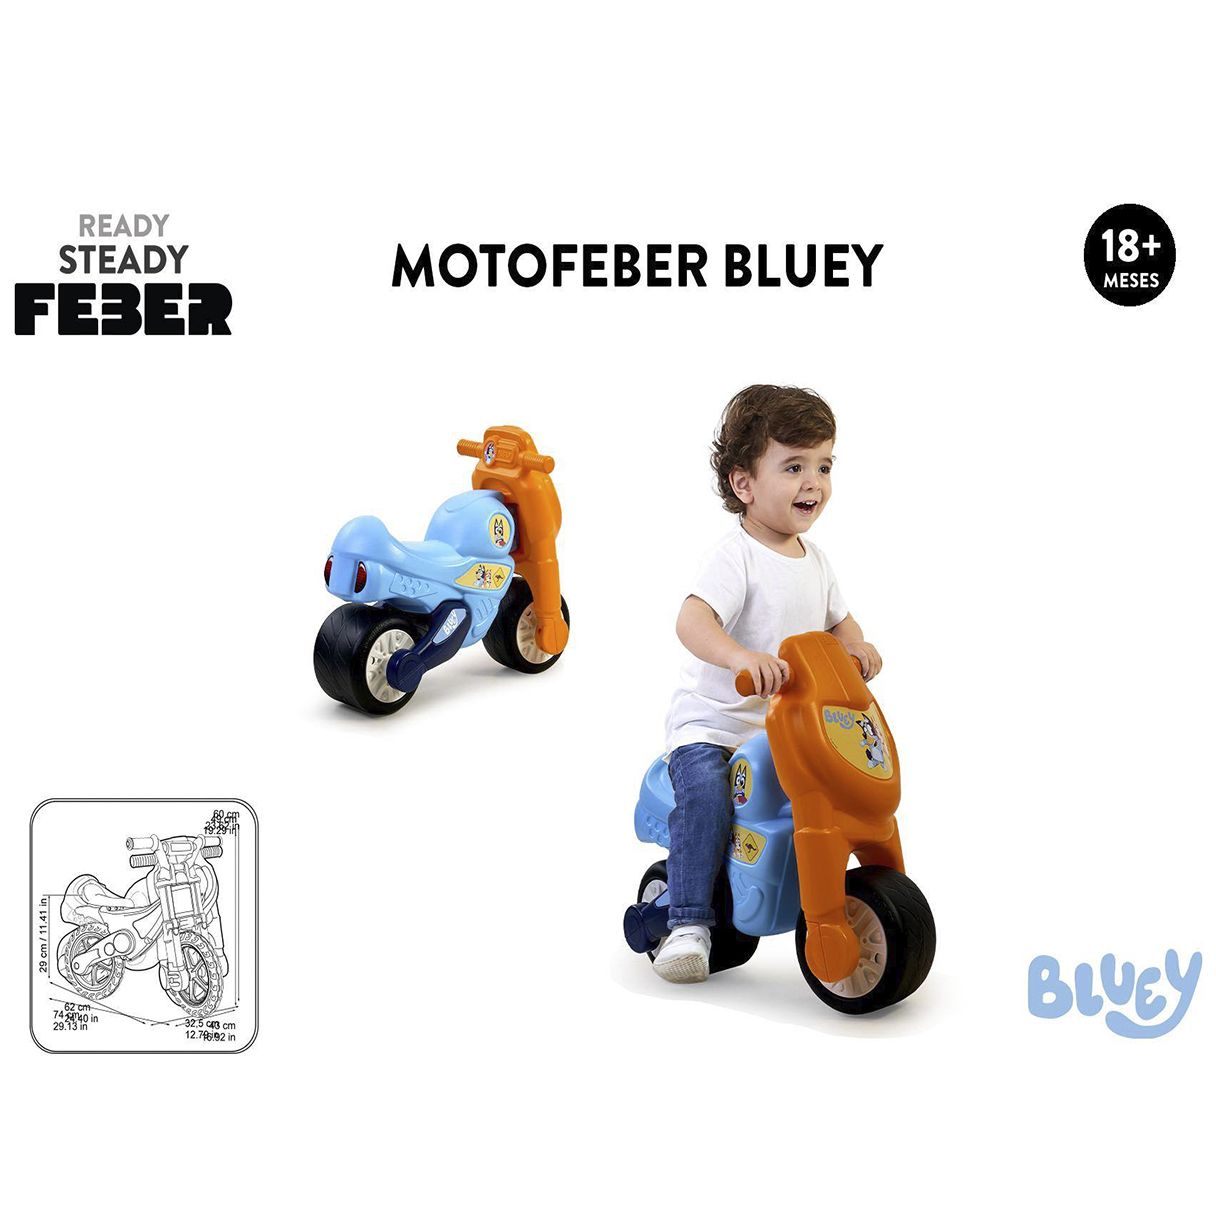 motofeber bluey (feber -fed18000)